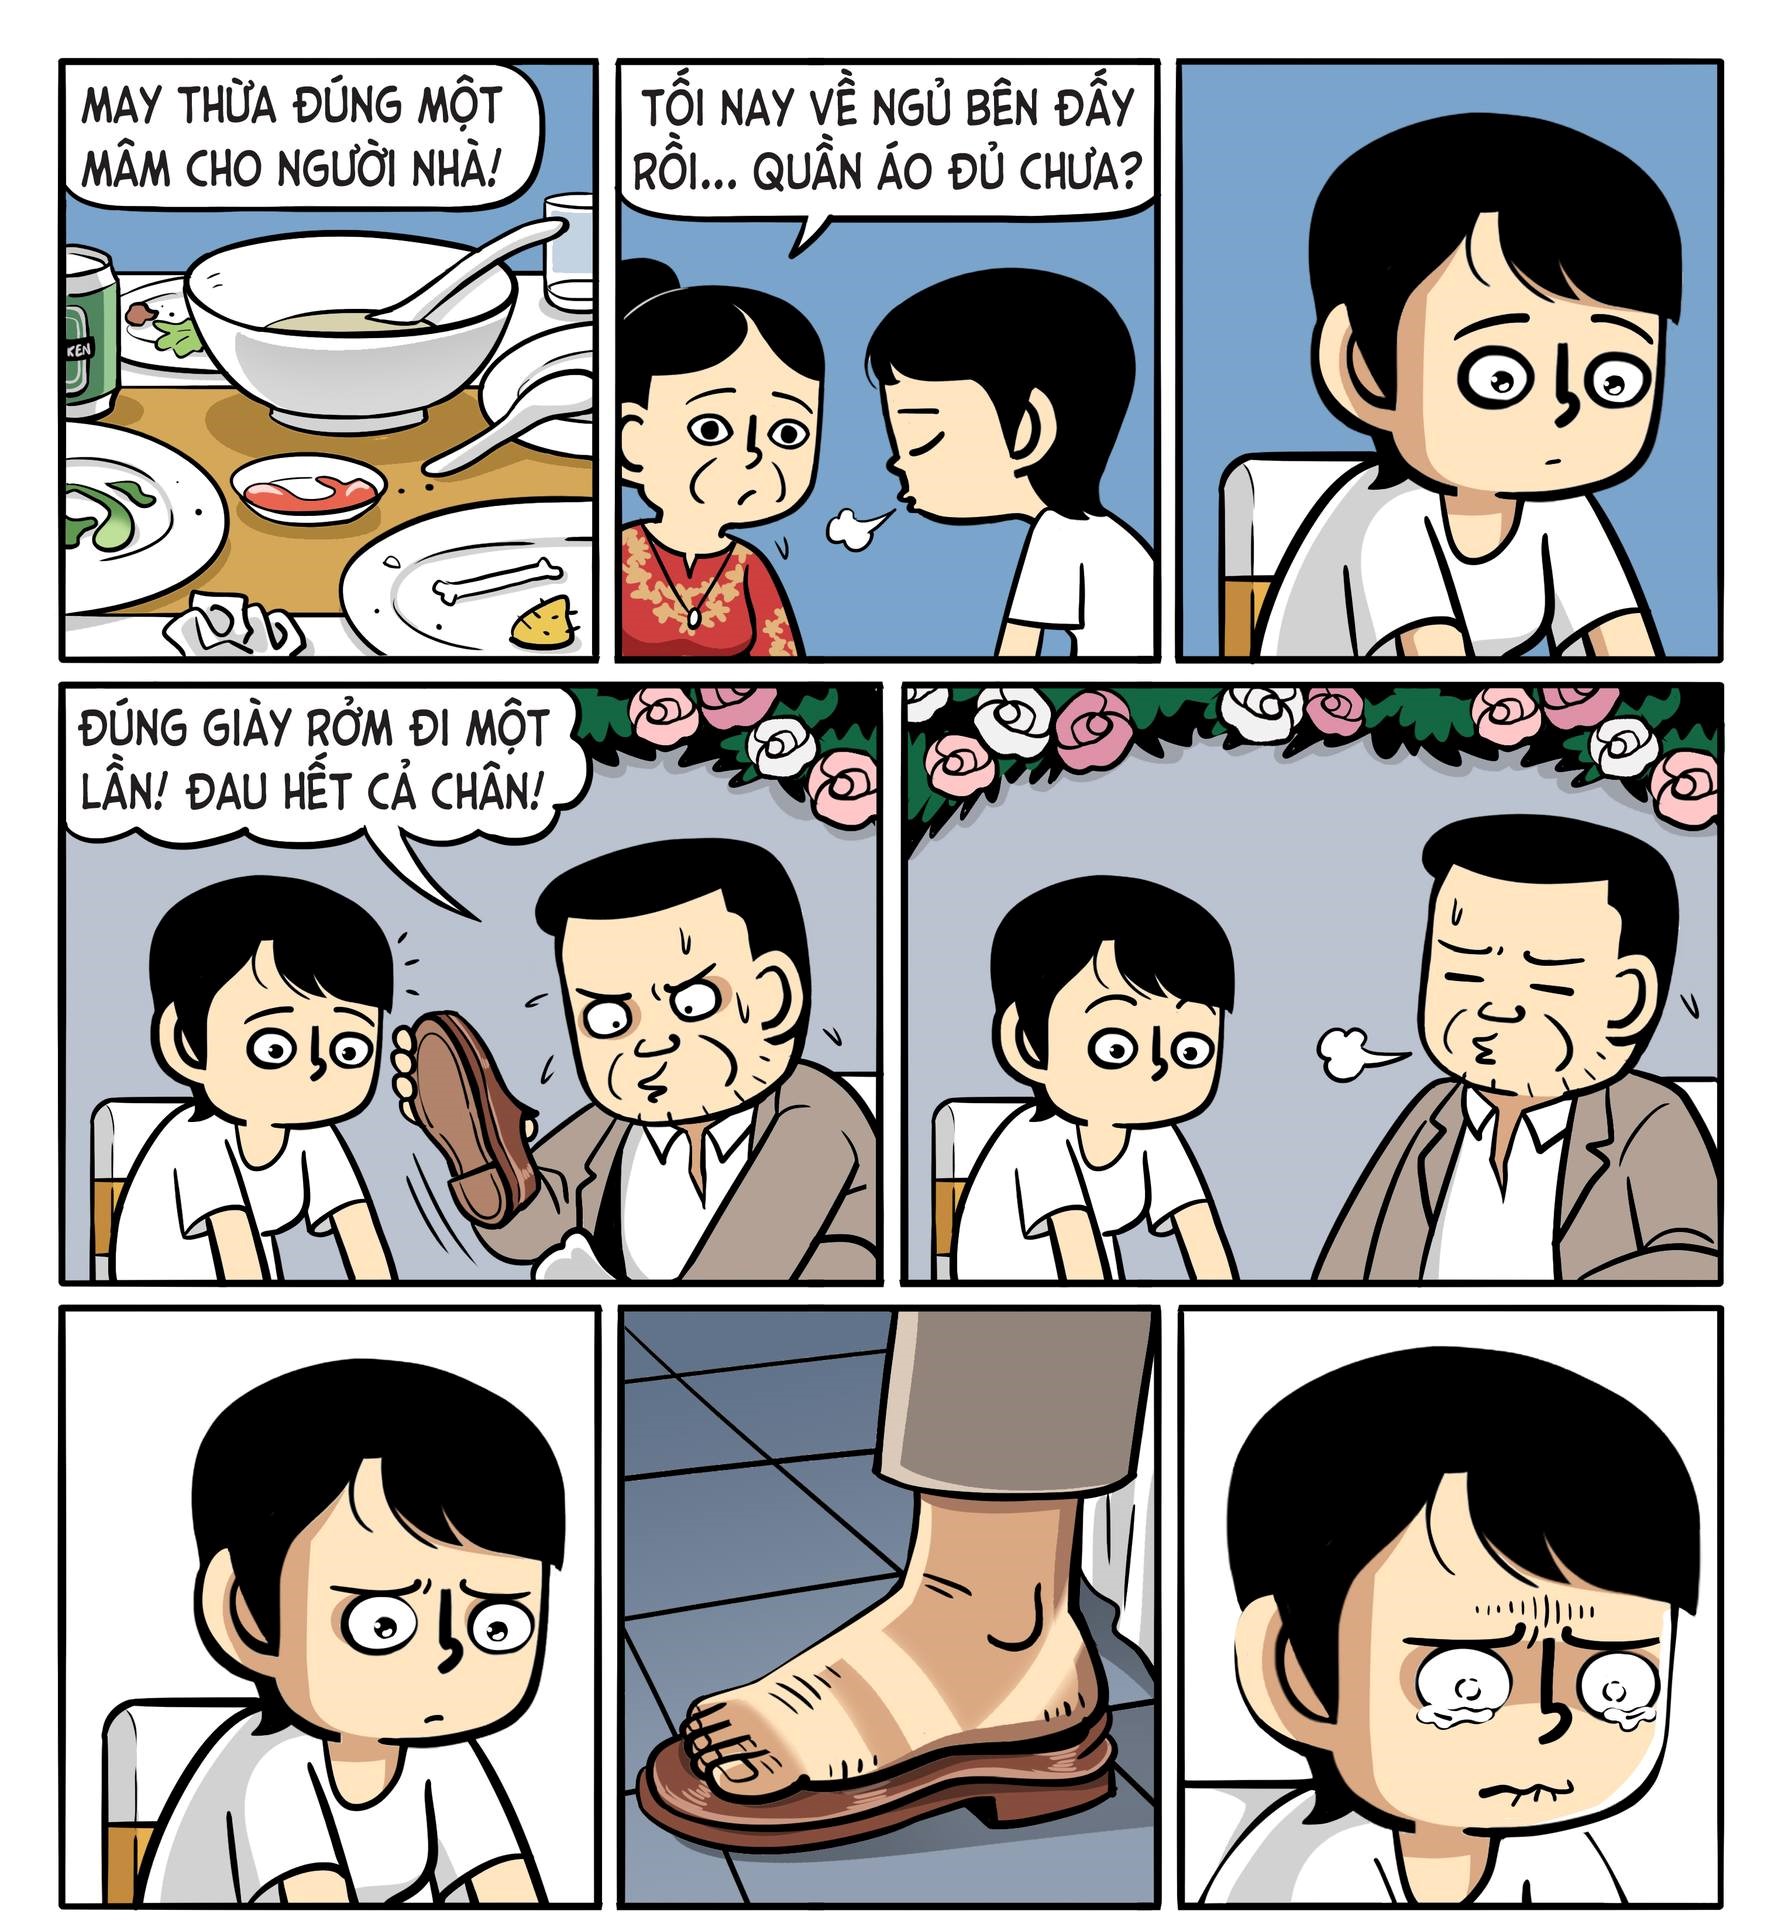 “Bố và con gái”: Bộ truyện tranh về tình cảm gia đình khiến cộng đồng mạng xúc động - Ảnh 6.